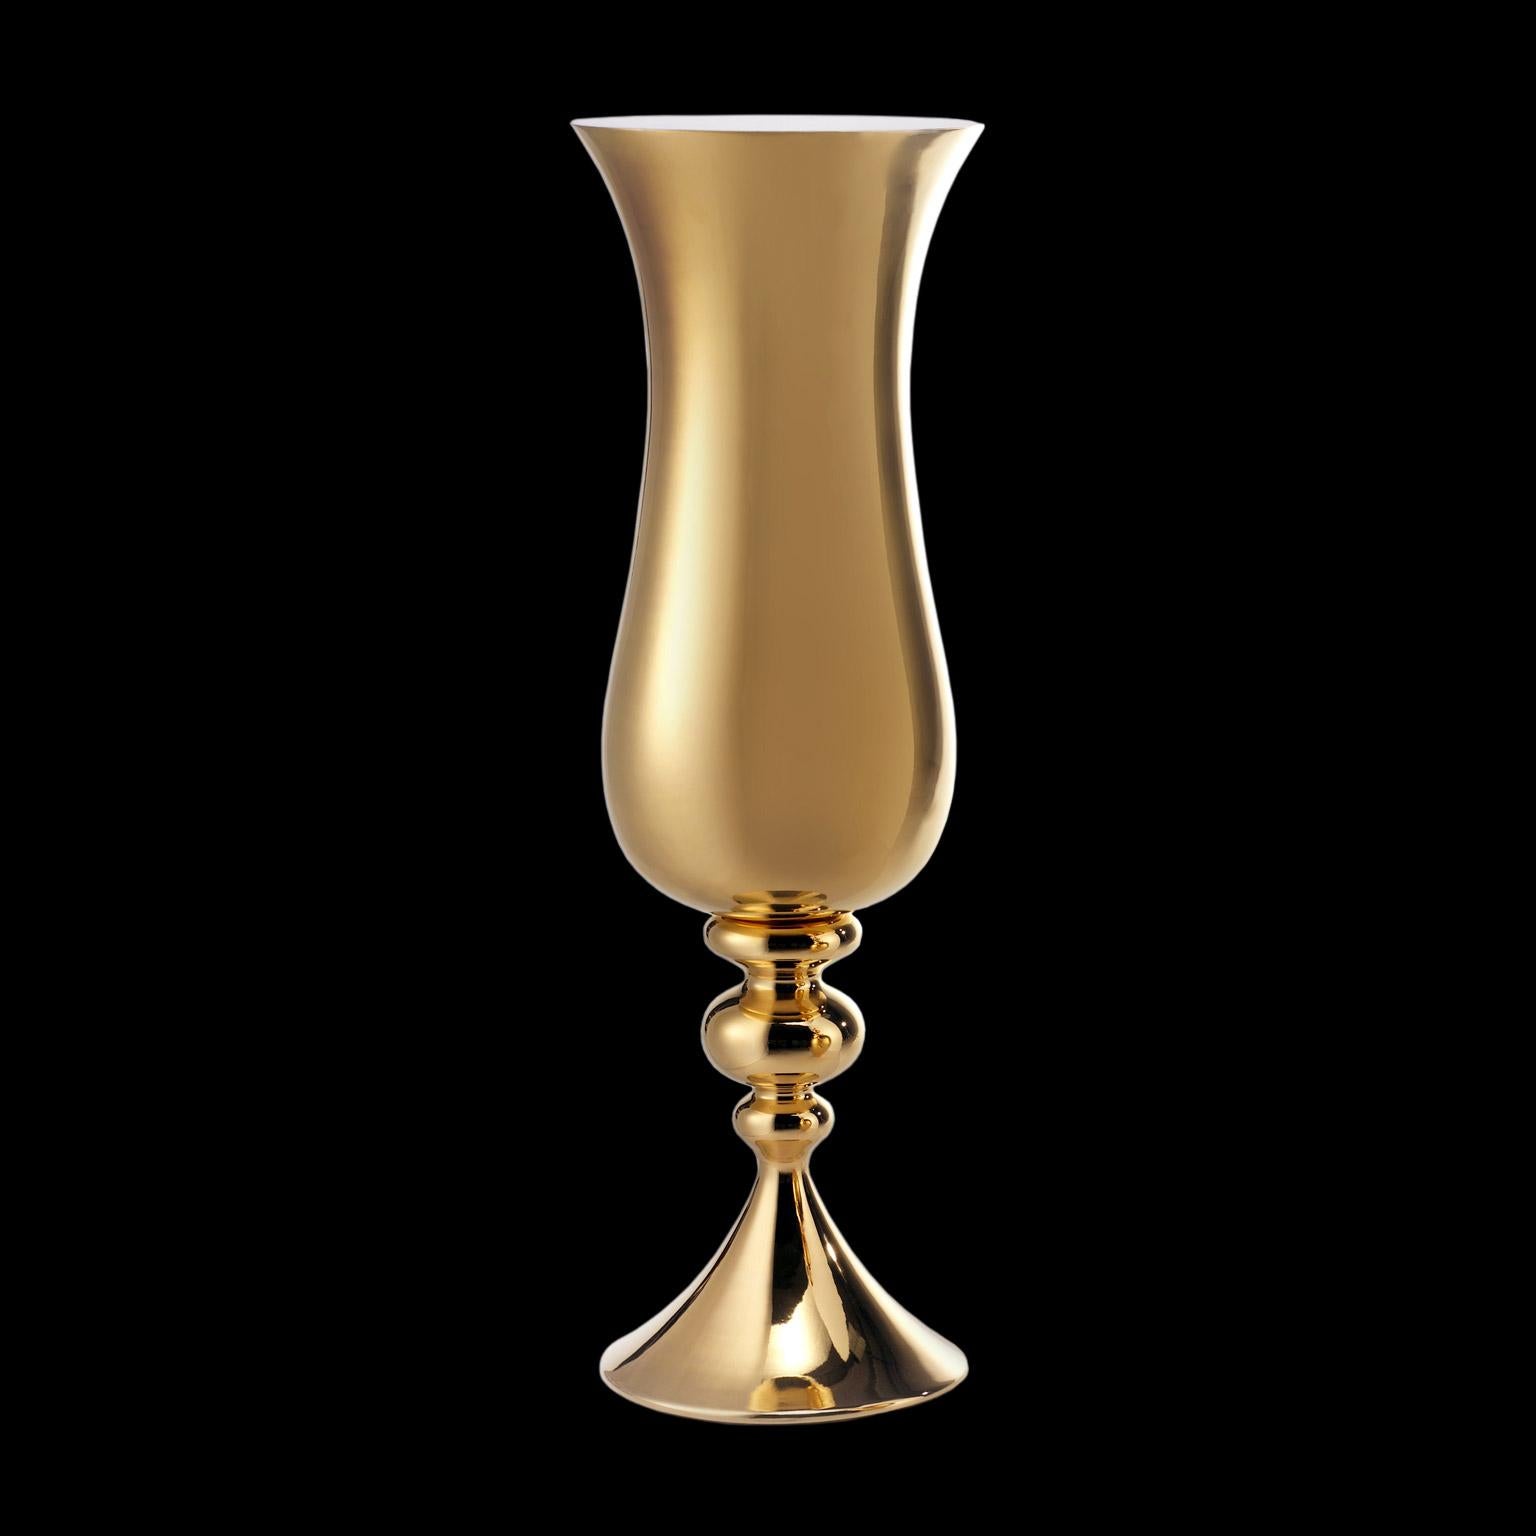 Vase en céramique LOTH
morue. CP050 
fabriqué à la main en or 24 carats
et intérieur en verre blanc  

mesures : 
H. 140.0 cm.
Dm. 40.0 cm.